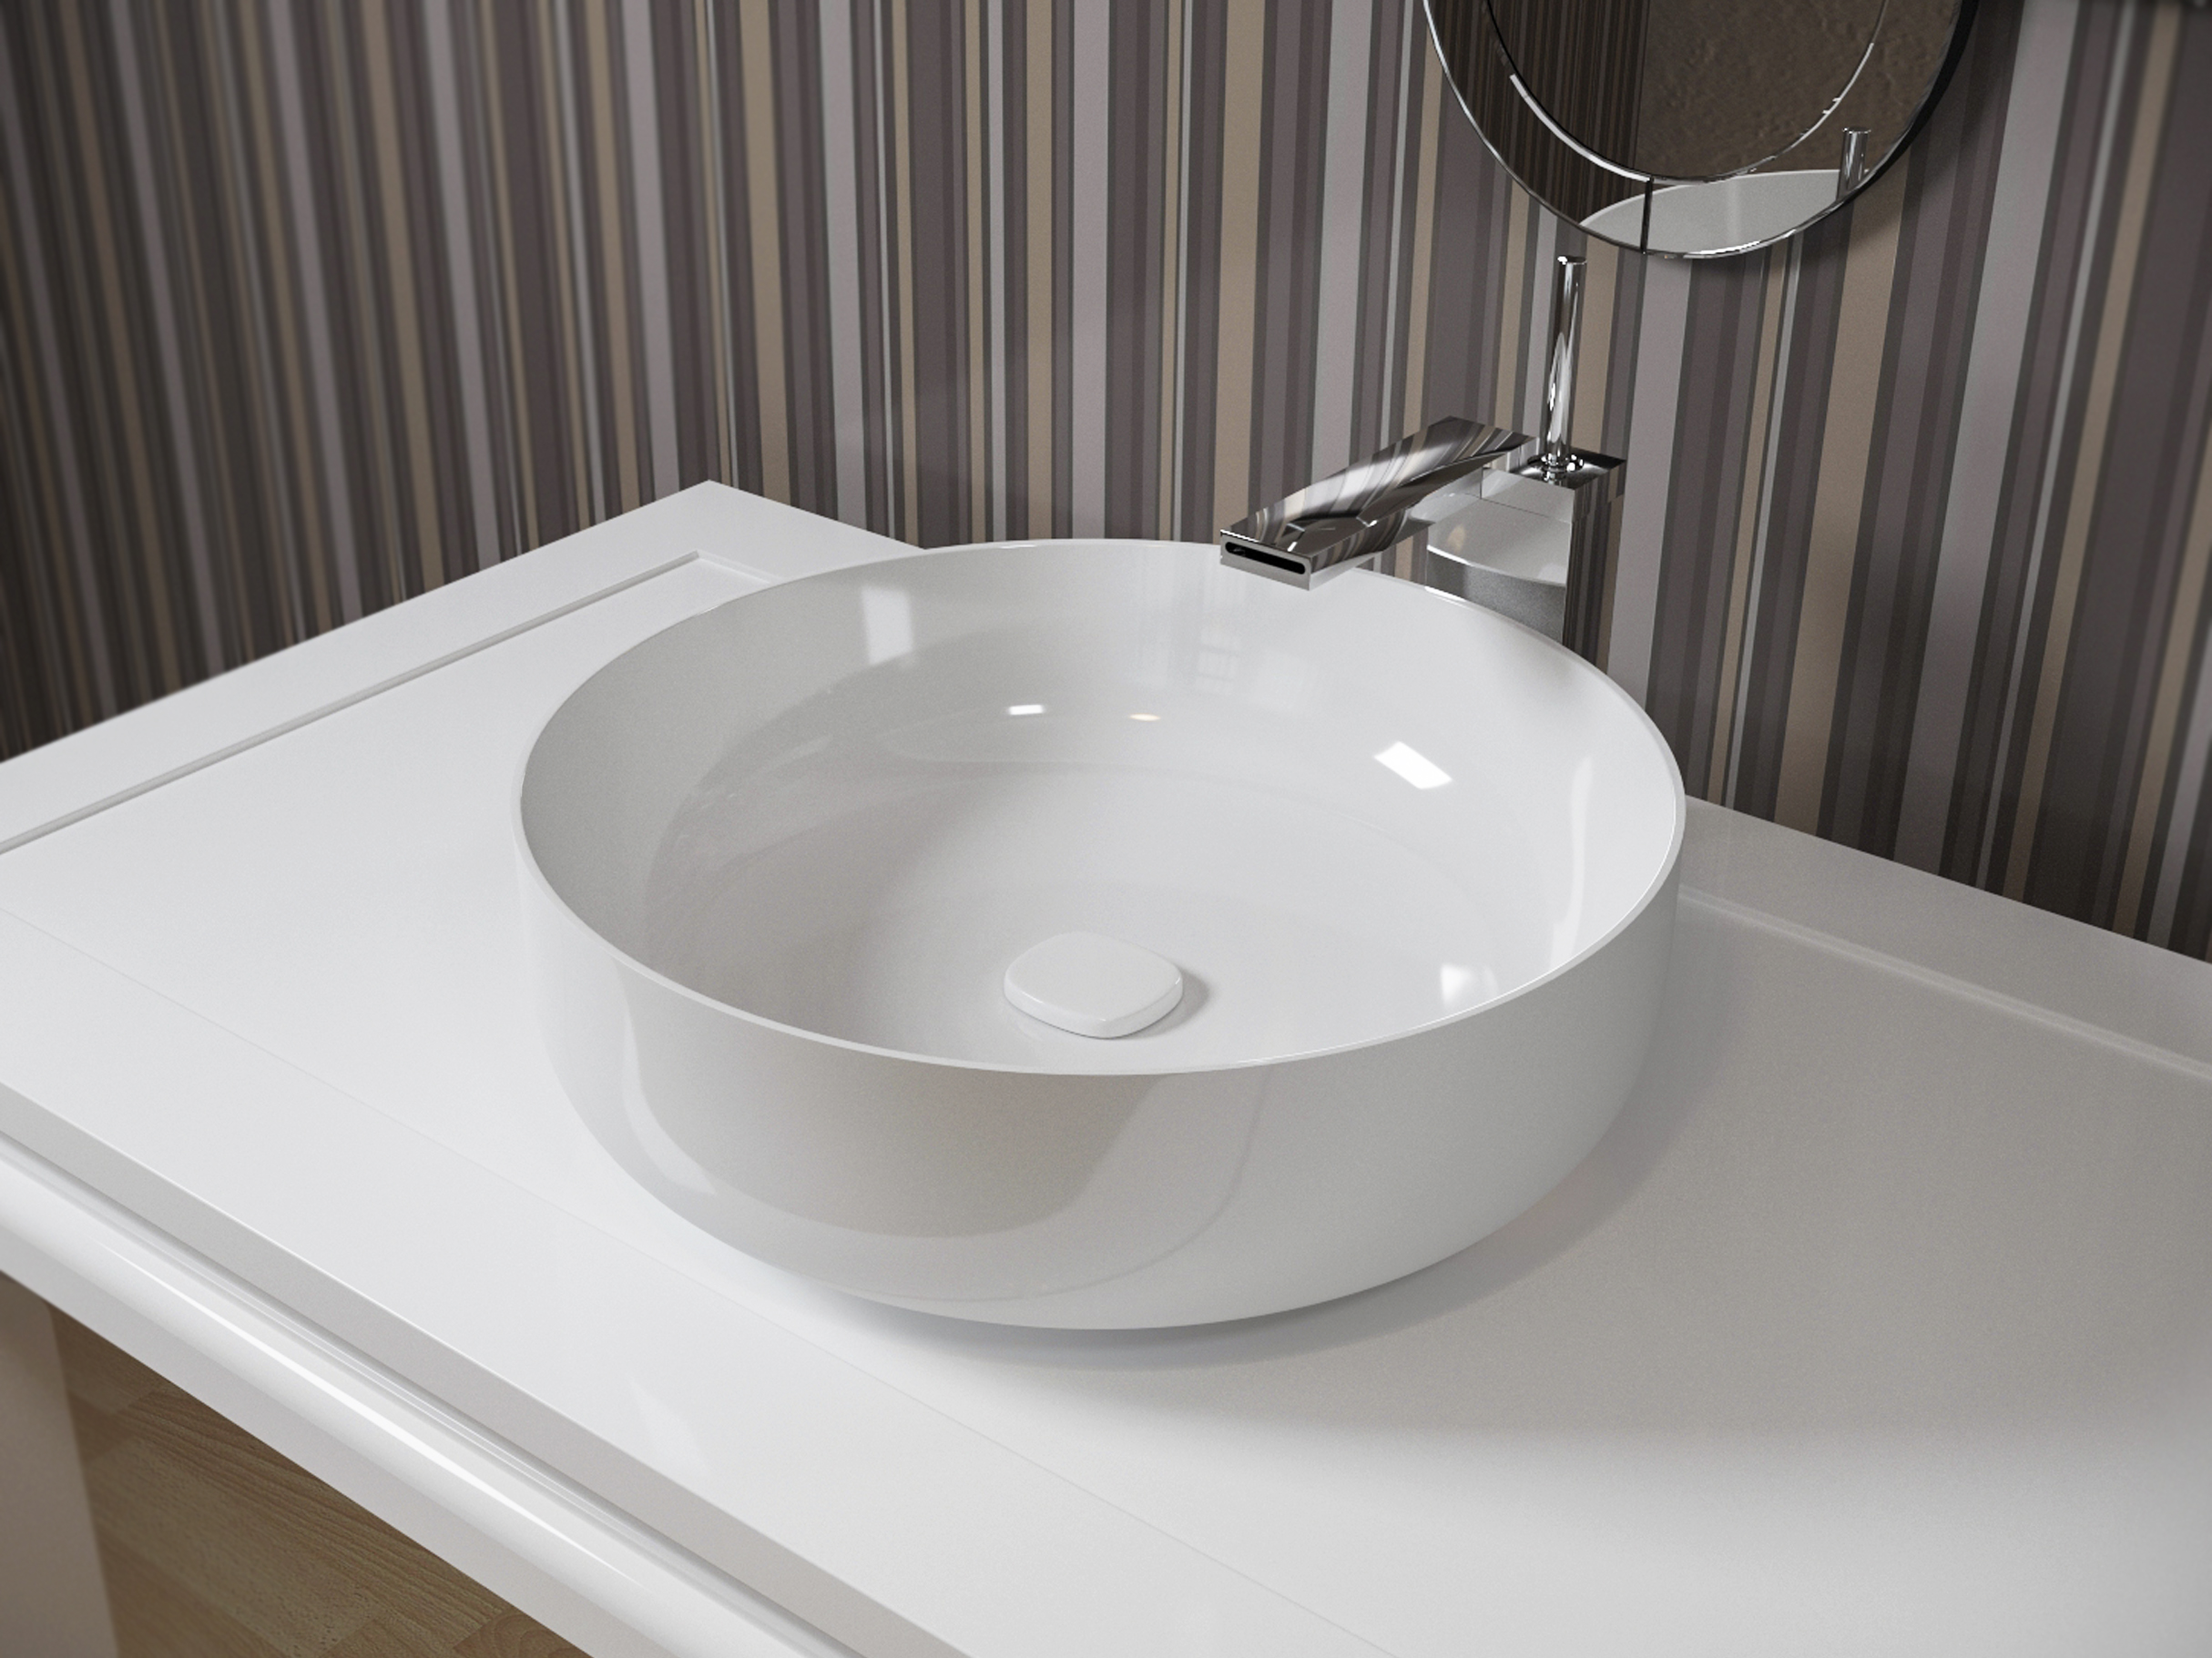 Aquatica Metamorfosi Wht Round Ceramic Bathroom Vessel Sink